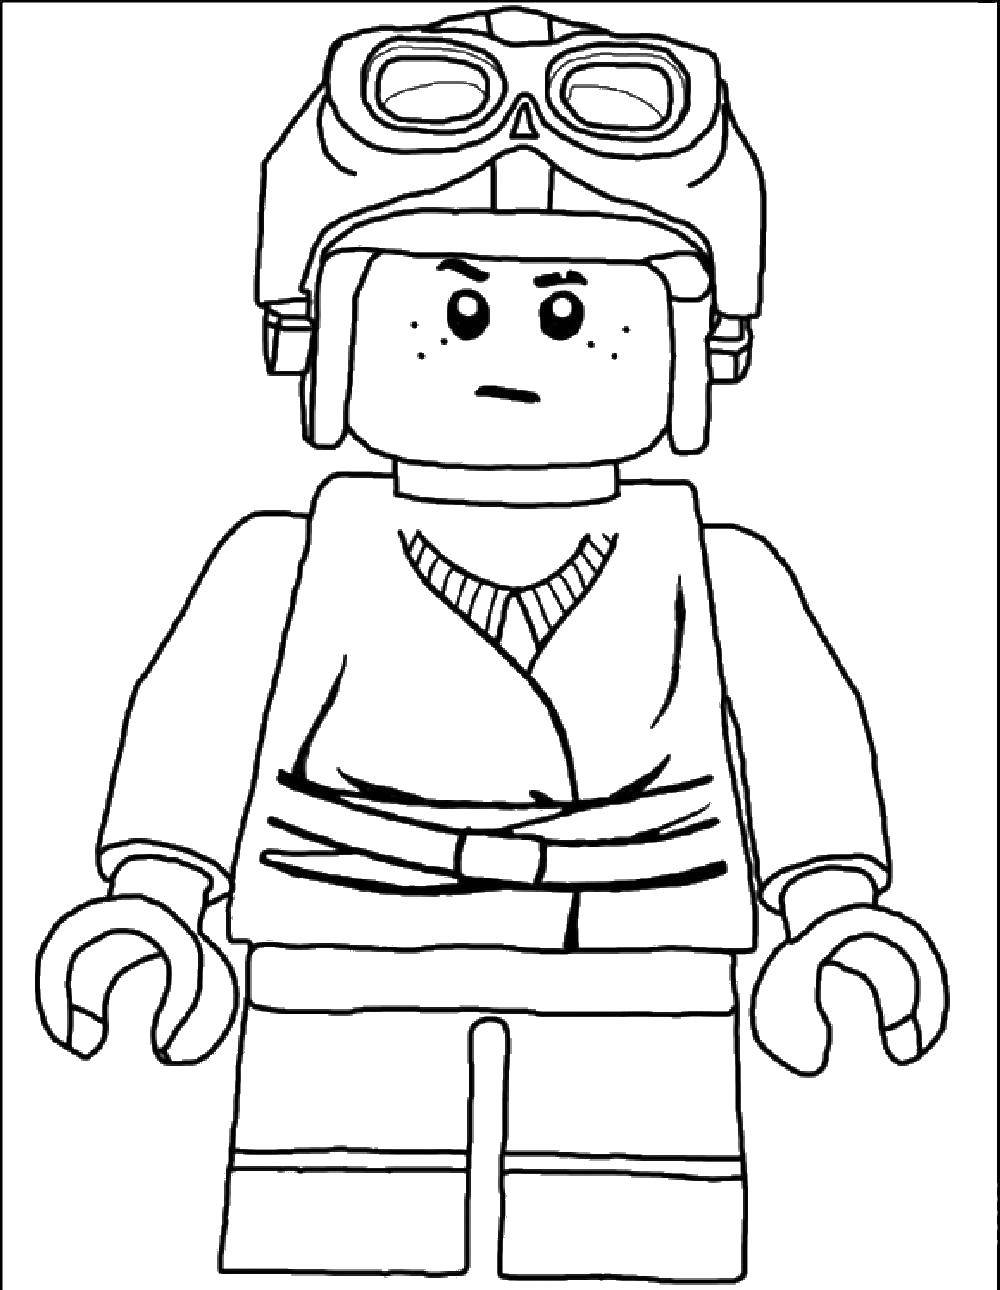 Название: Раскраска Летчик лего. Категория: Лего. Теги: игры, конструктор, Лего, летчик.